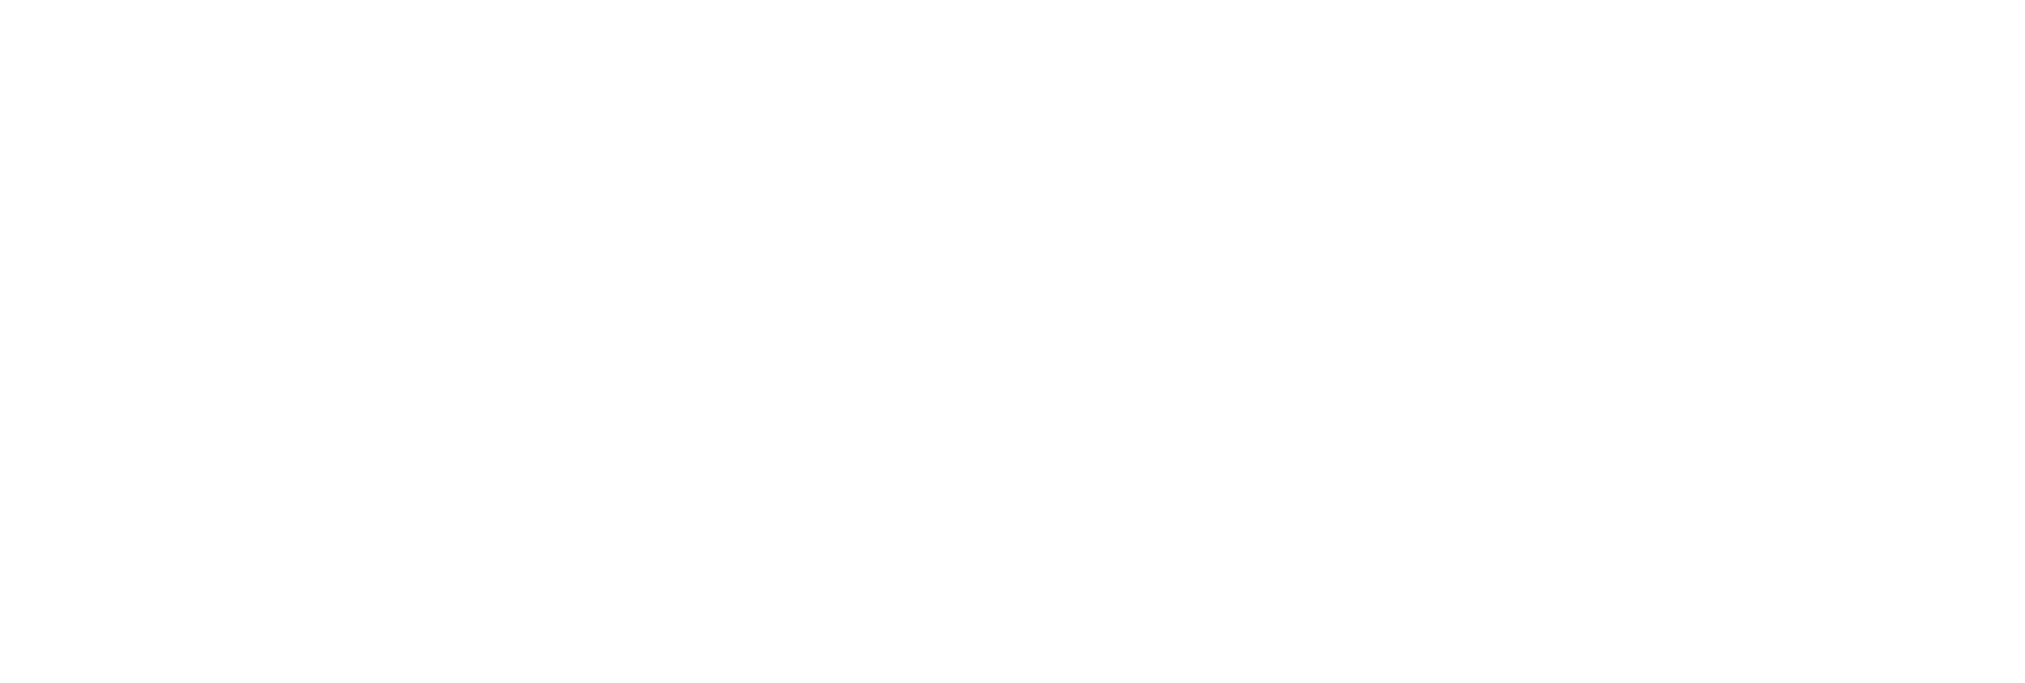 white logo watermark of tsri